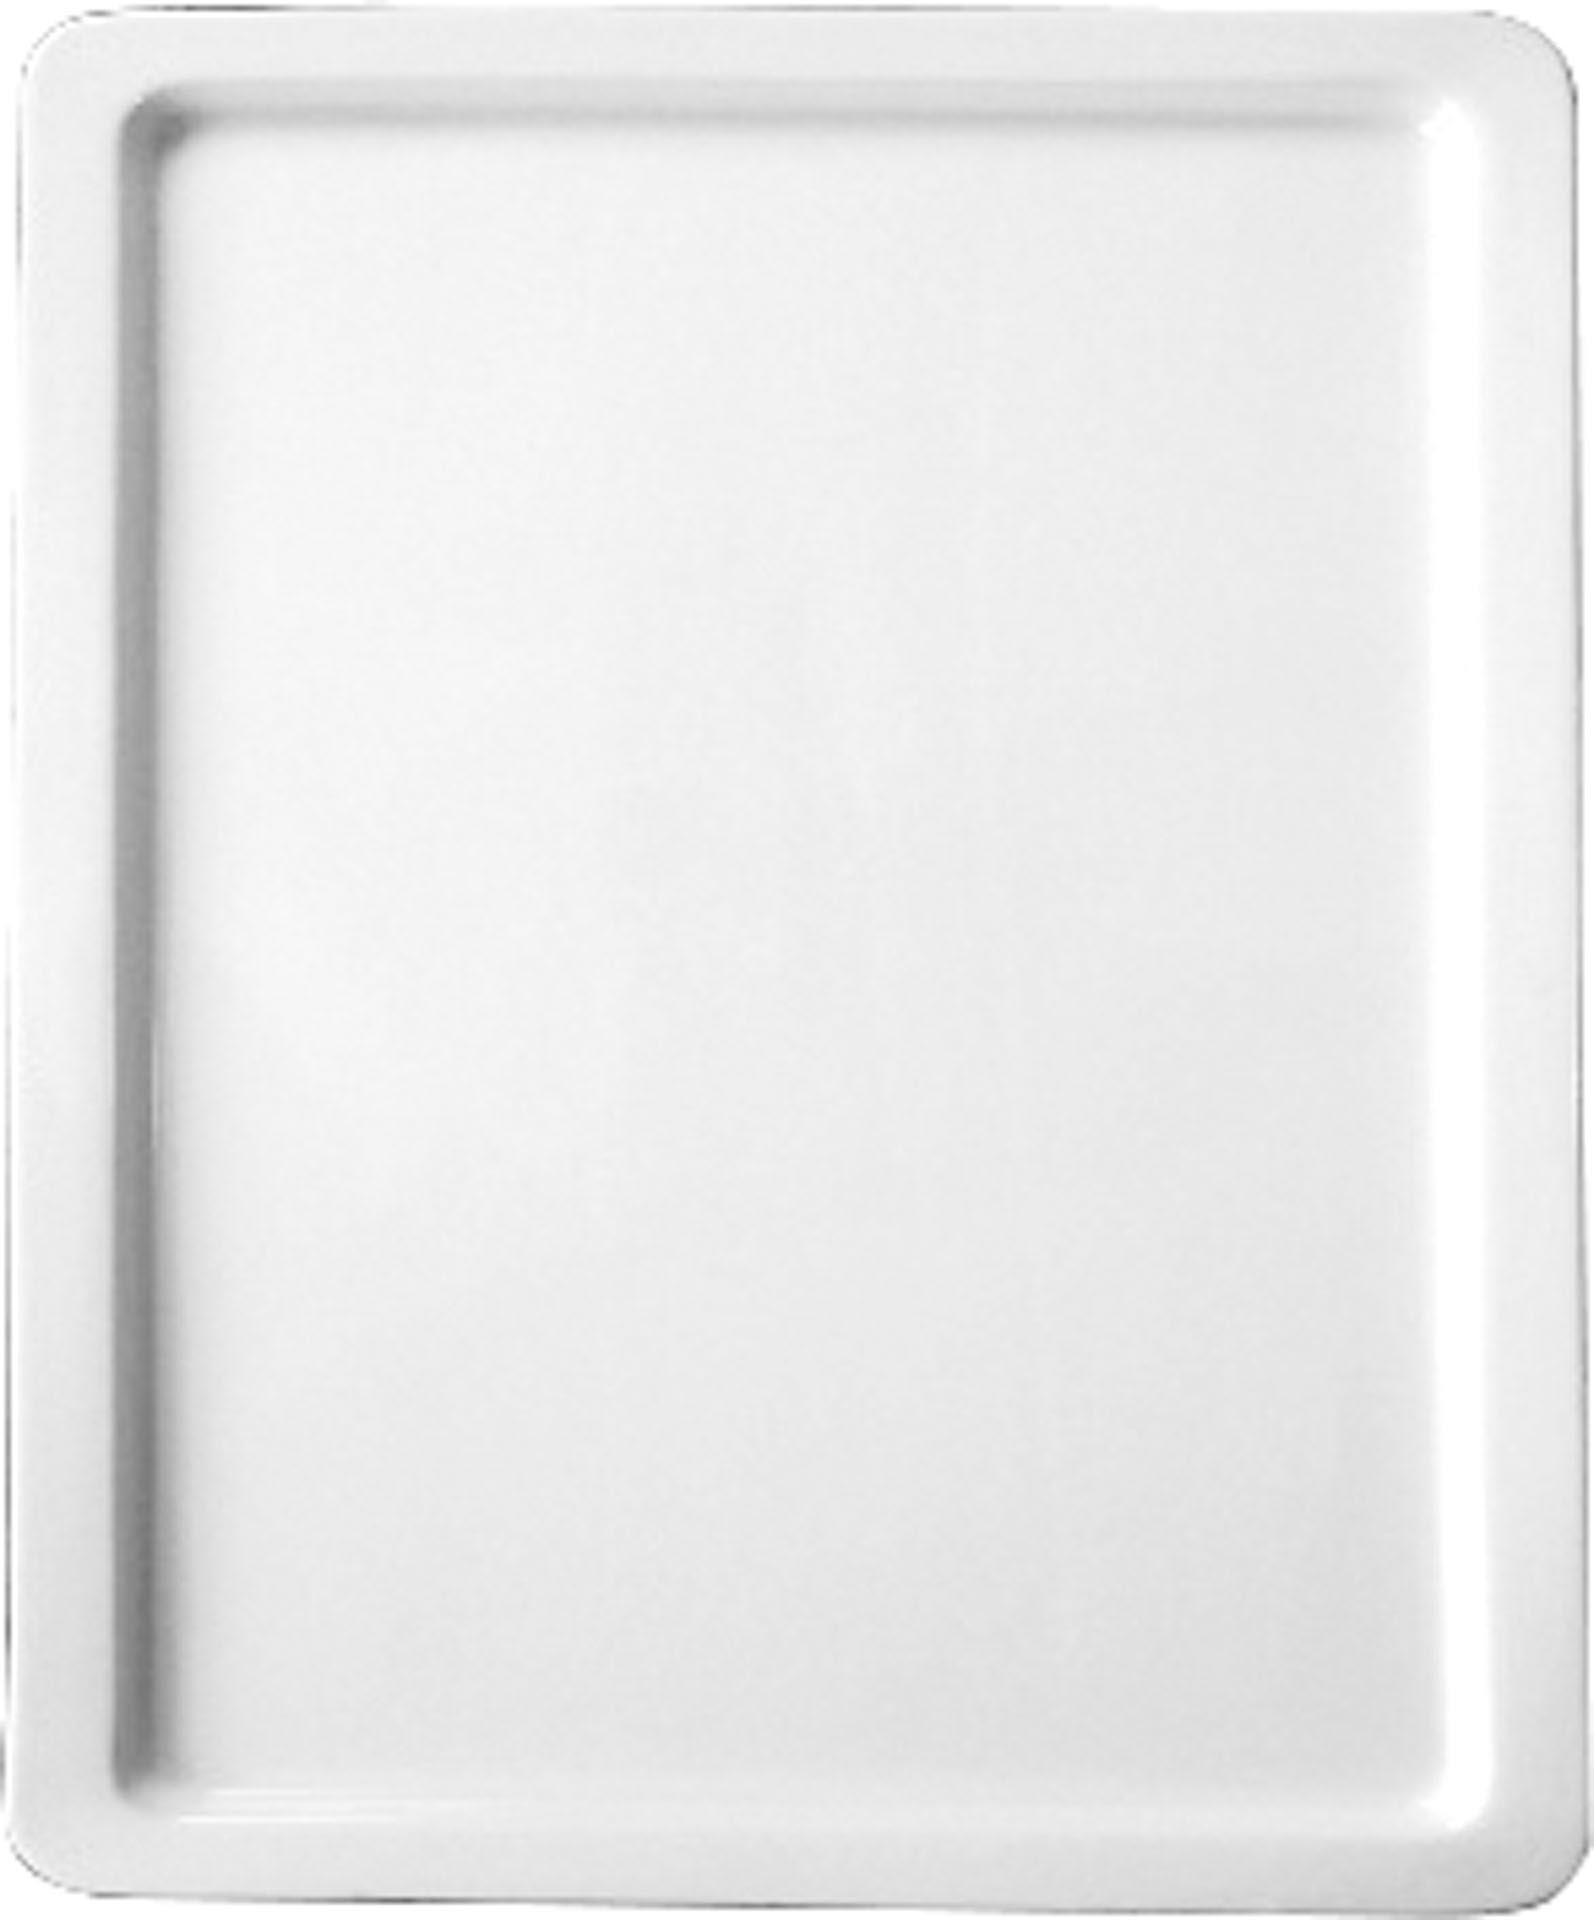 GN-Platte 1/1 - 20 mm, weiß, Porzellan